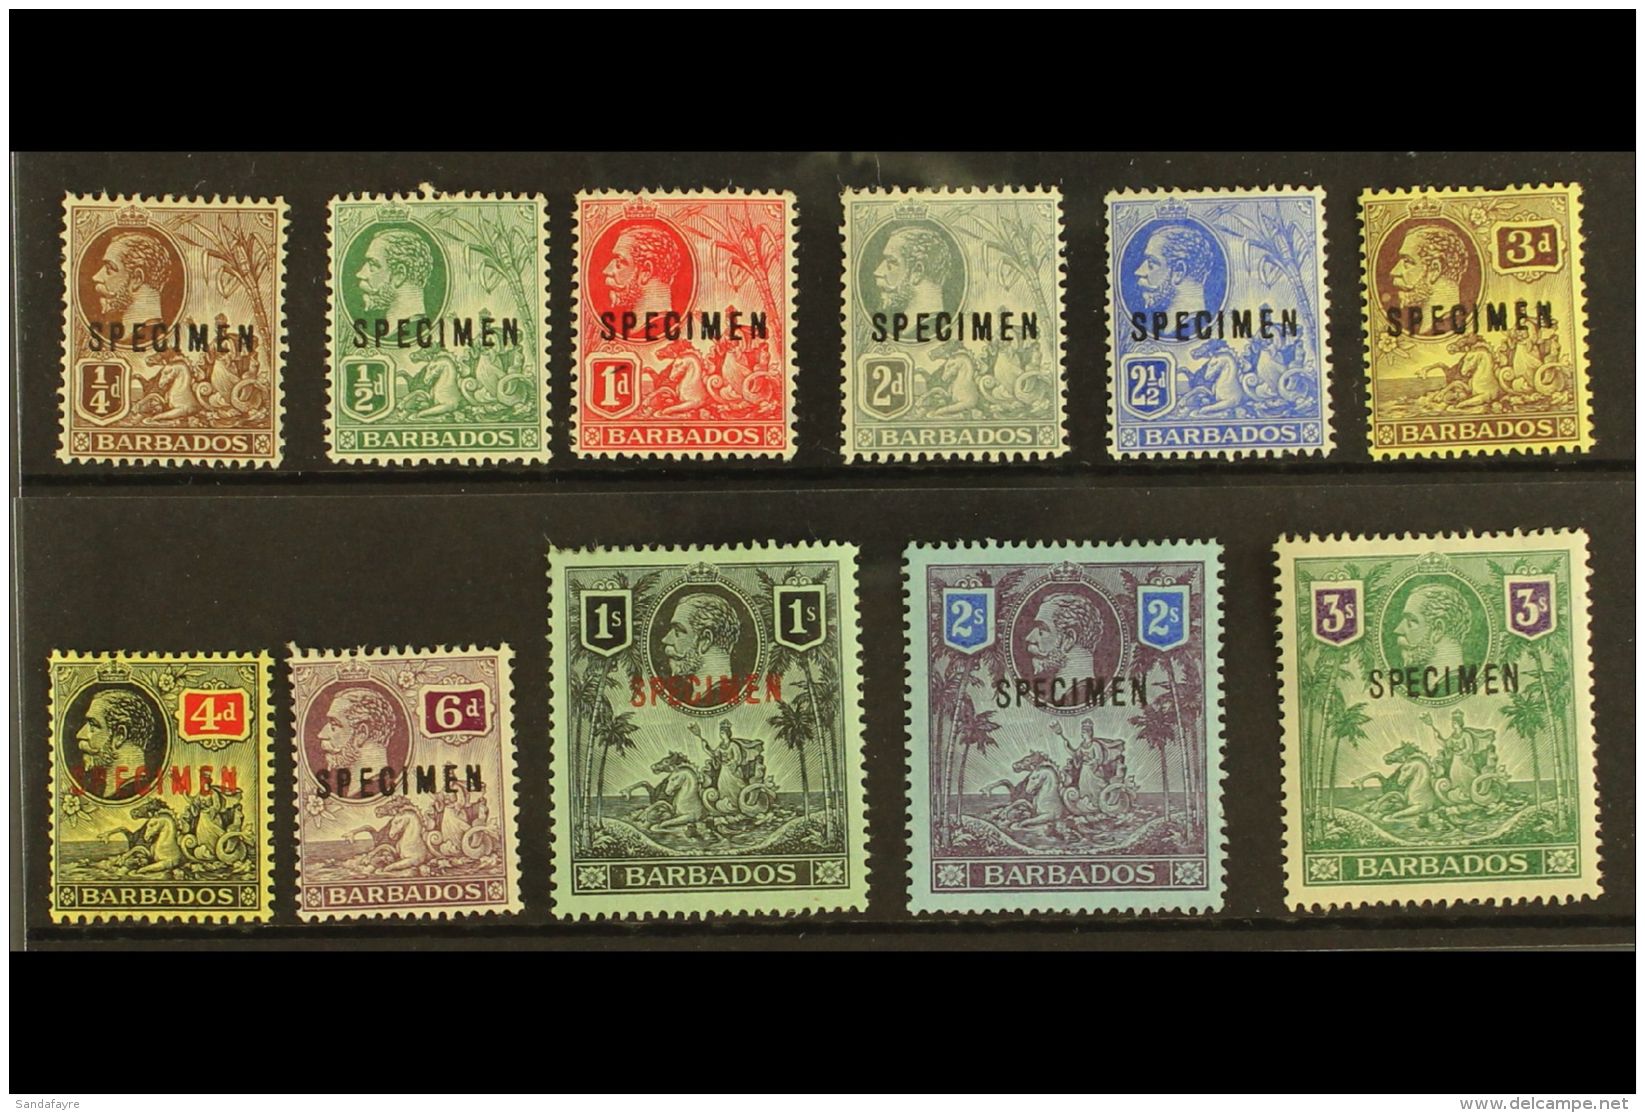 1912 Geo V And Seal Set Complete Overprinted "Specimen", SG 170s/80s, Very Fine Mint Large Part Og. (11 Stamps)... - Barbados (...-1966)